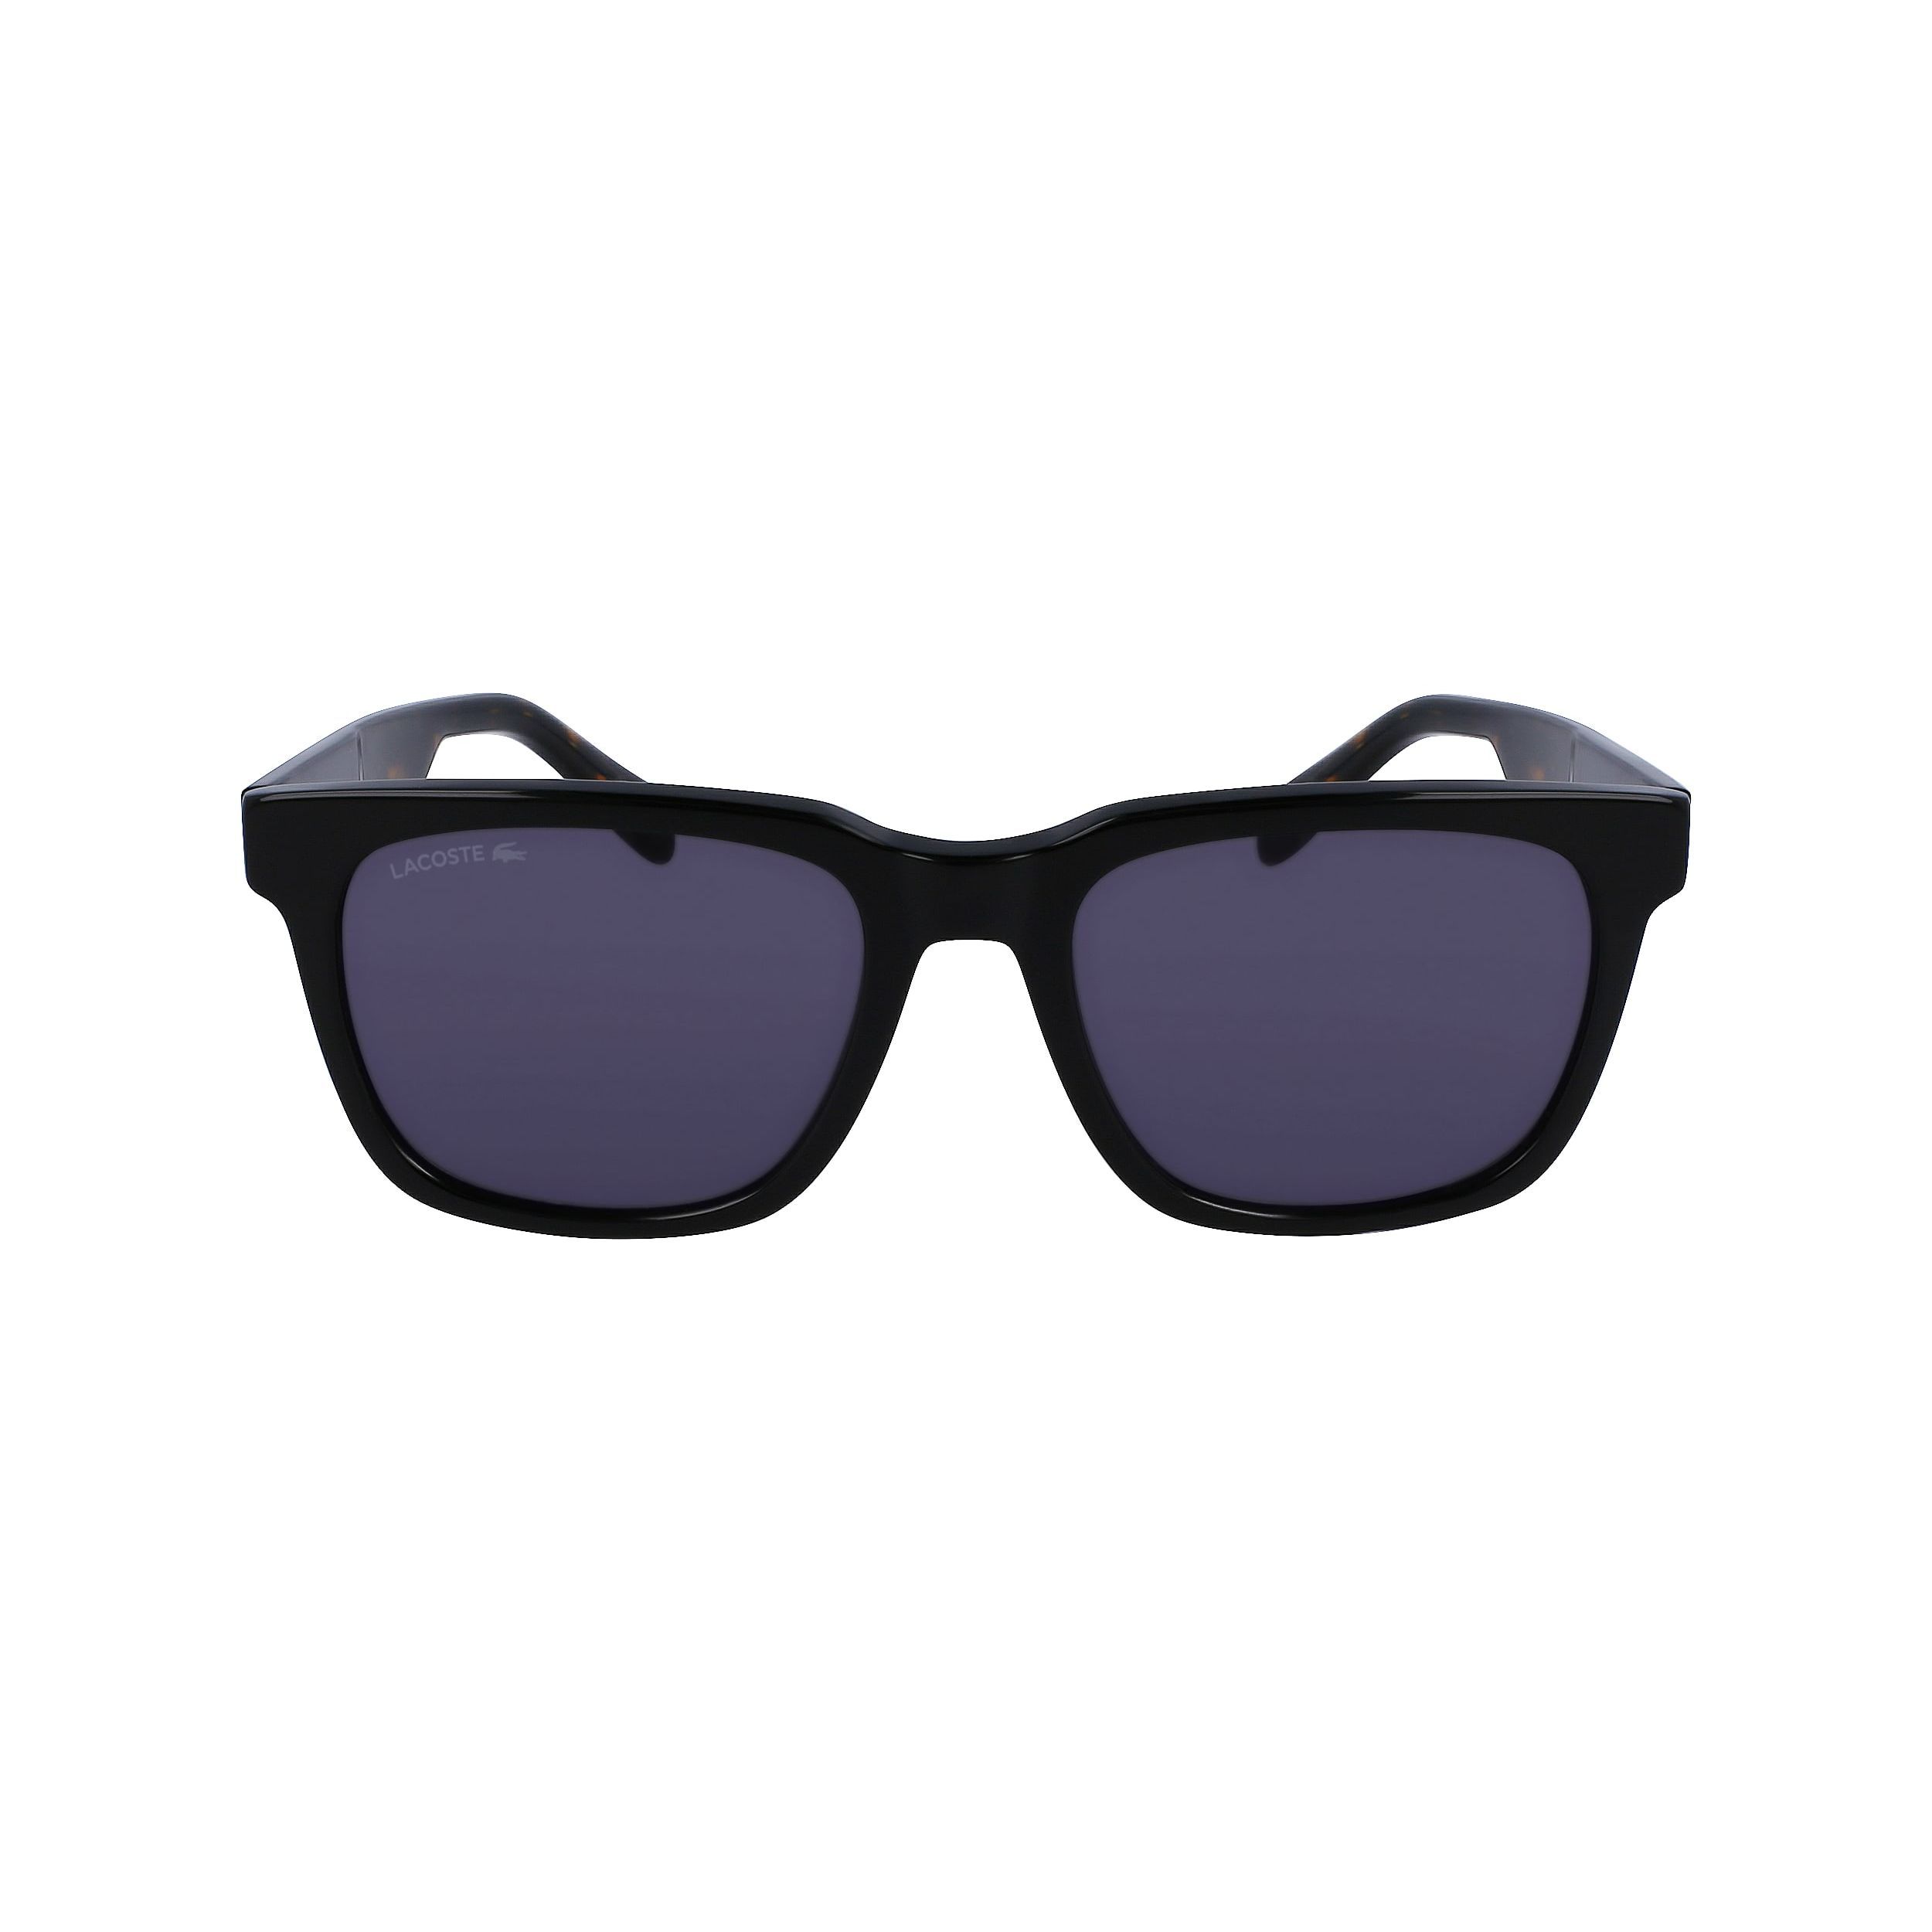 L996S Square Sunglasses 001 - size 54